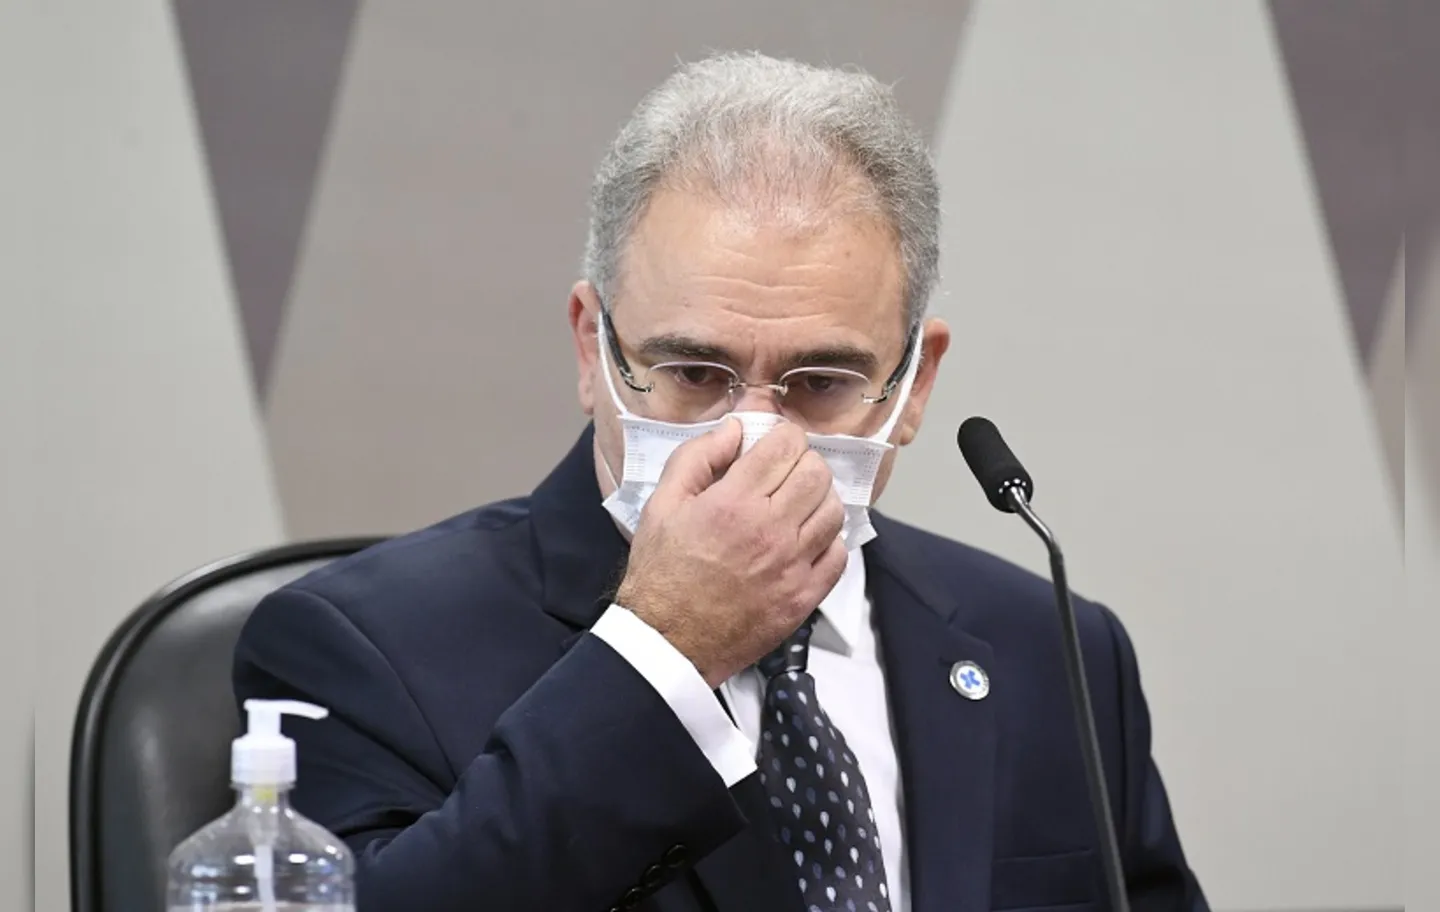 Ministro da Saúde afirmou que deve se preocupar 'com a vida dos brasileiros' | Foto: Jefferson Rudy I Agência Brasil